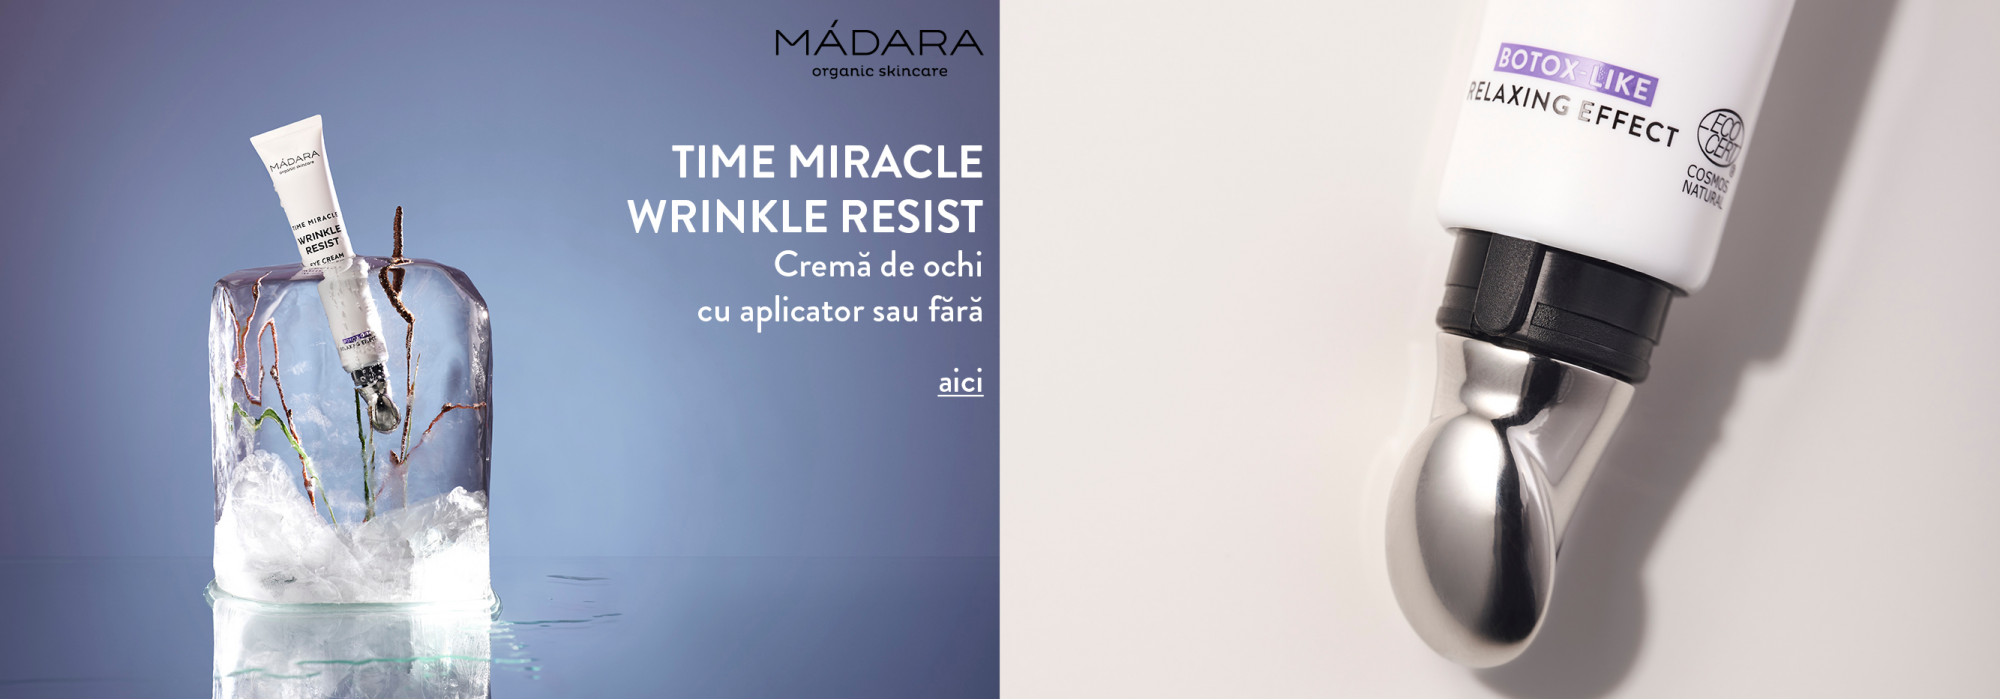 Madara Wrinkle Resist